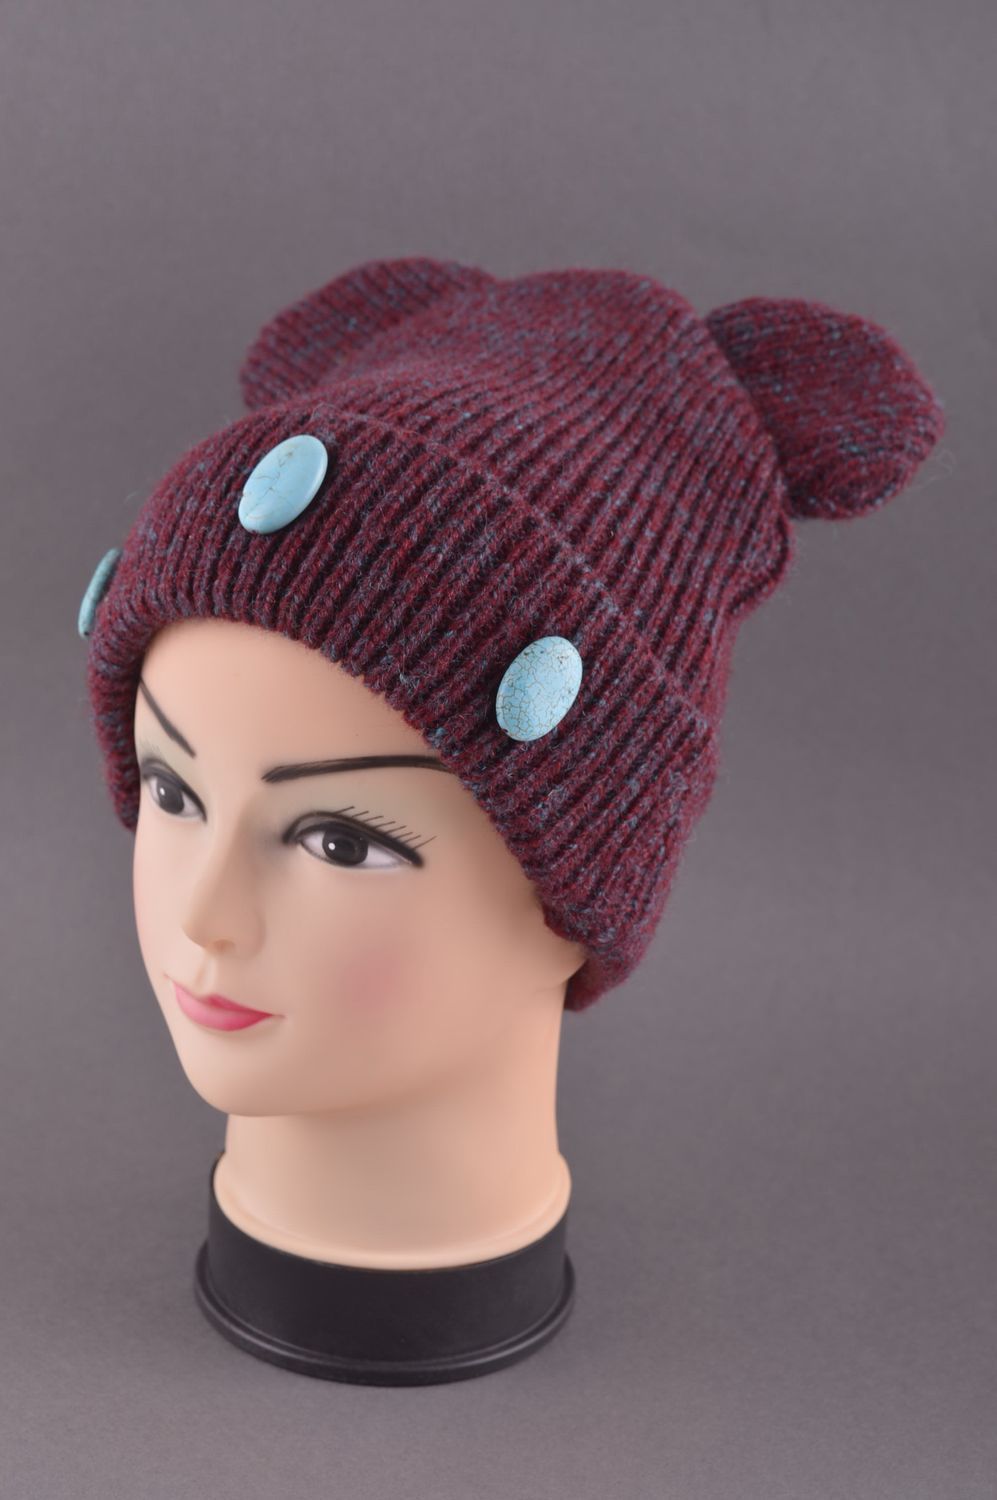 Hand-knitted woolen winter hat handmade hat winter accessories warm hat photo 1